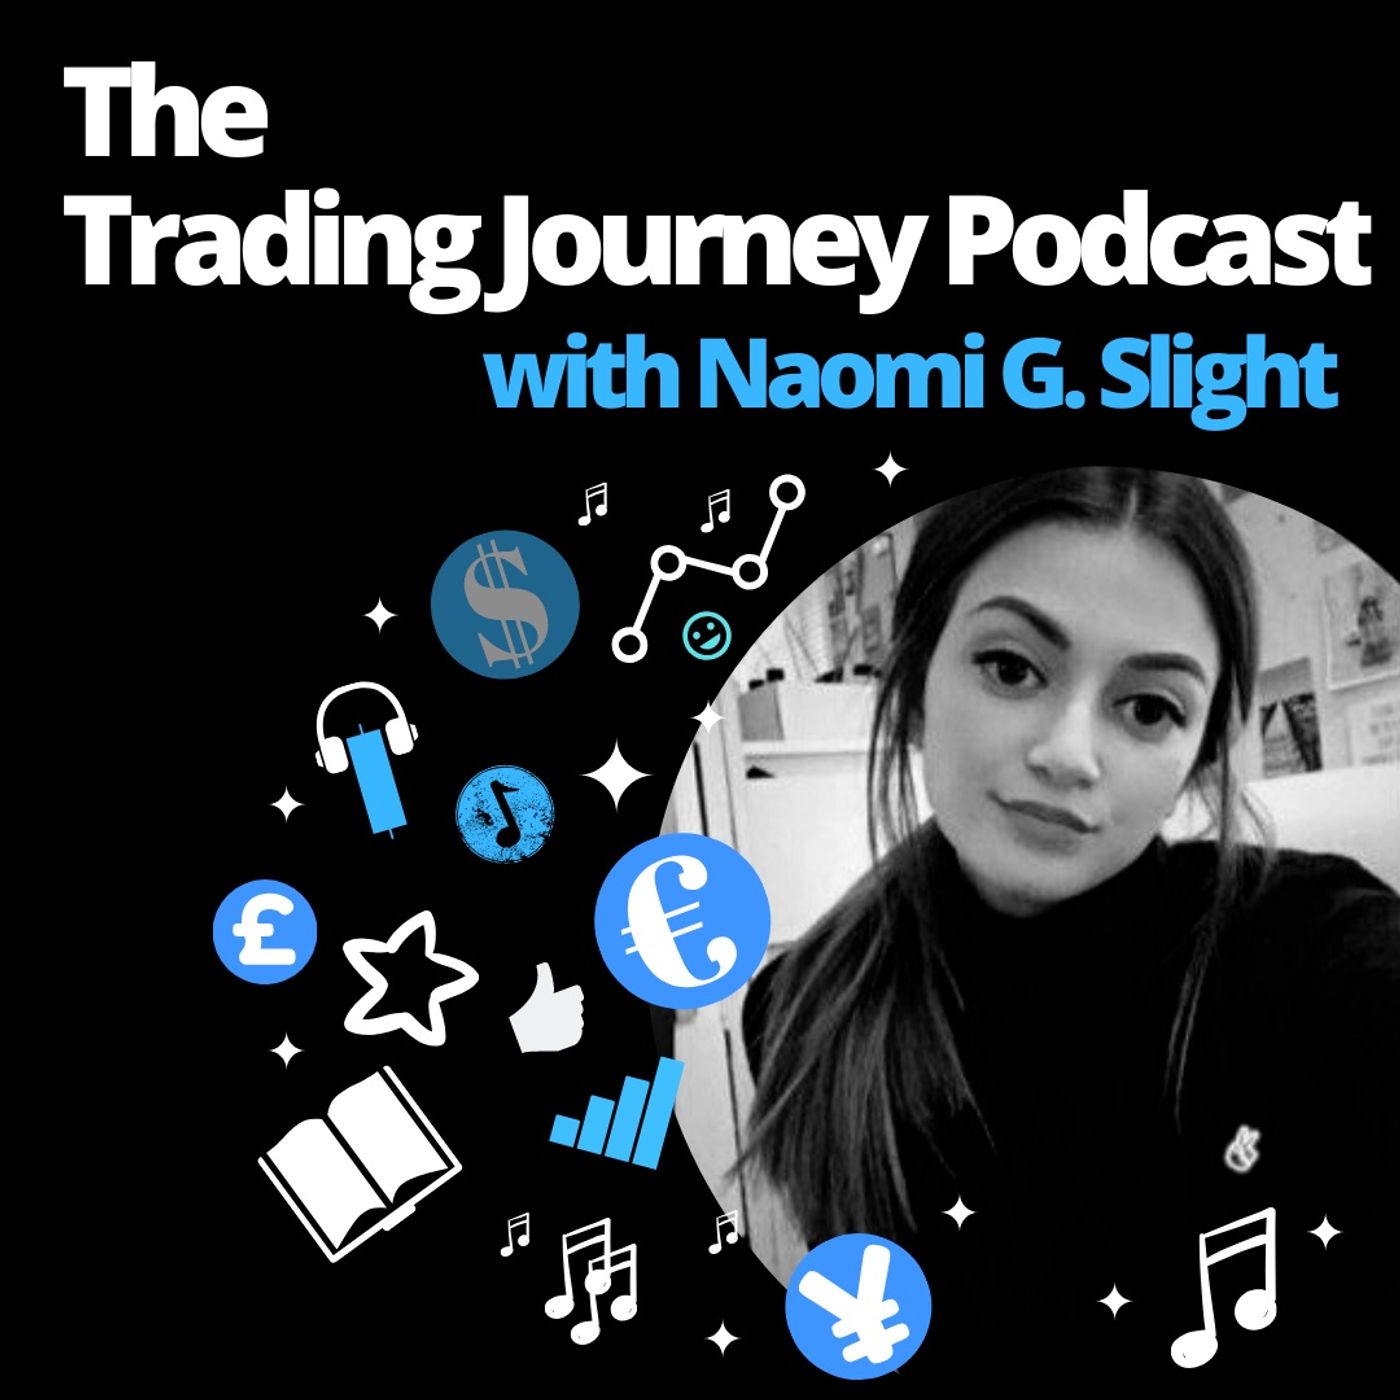 Episode 2 - How Do I Start My Trading Journey?